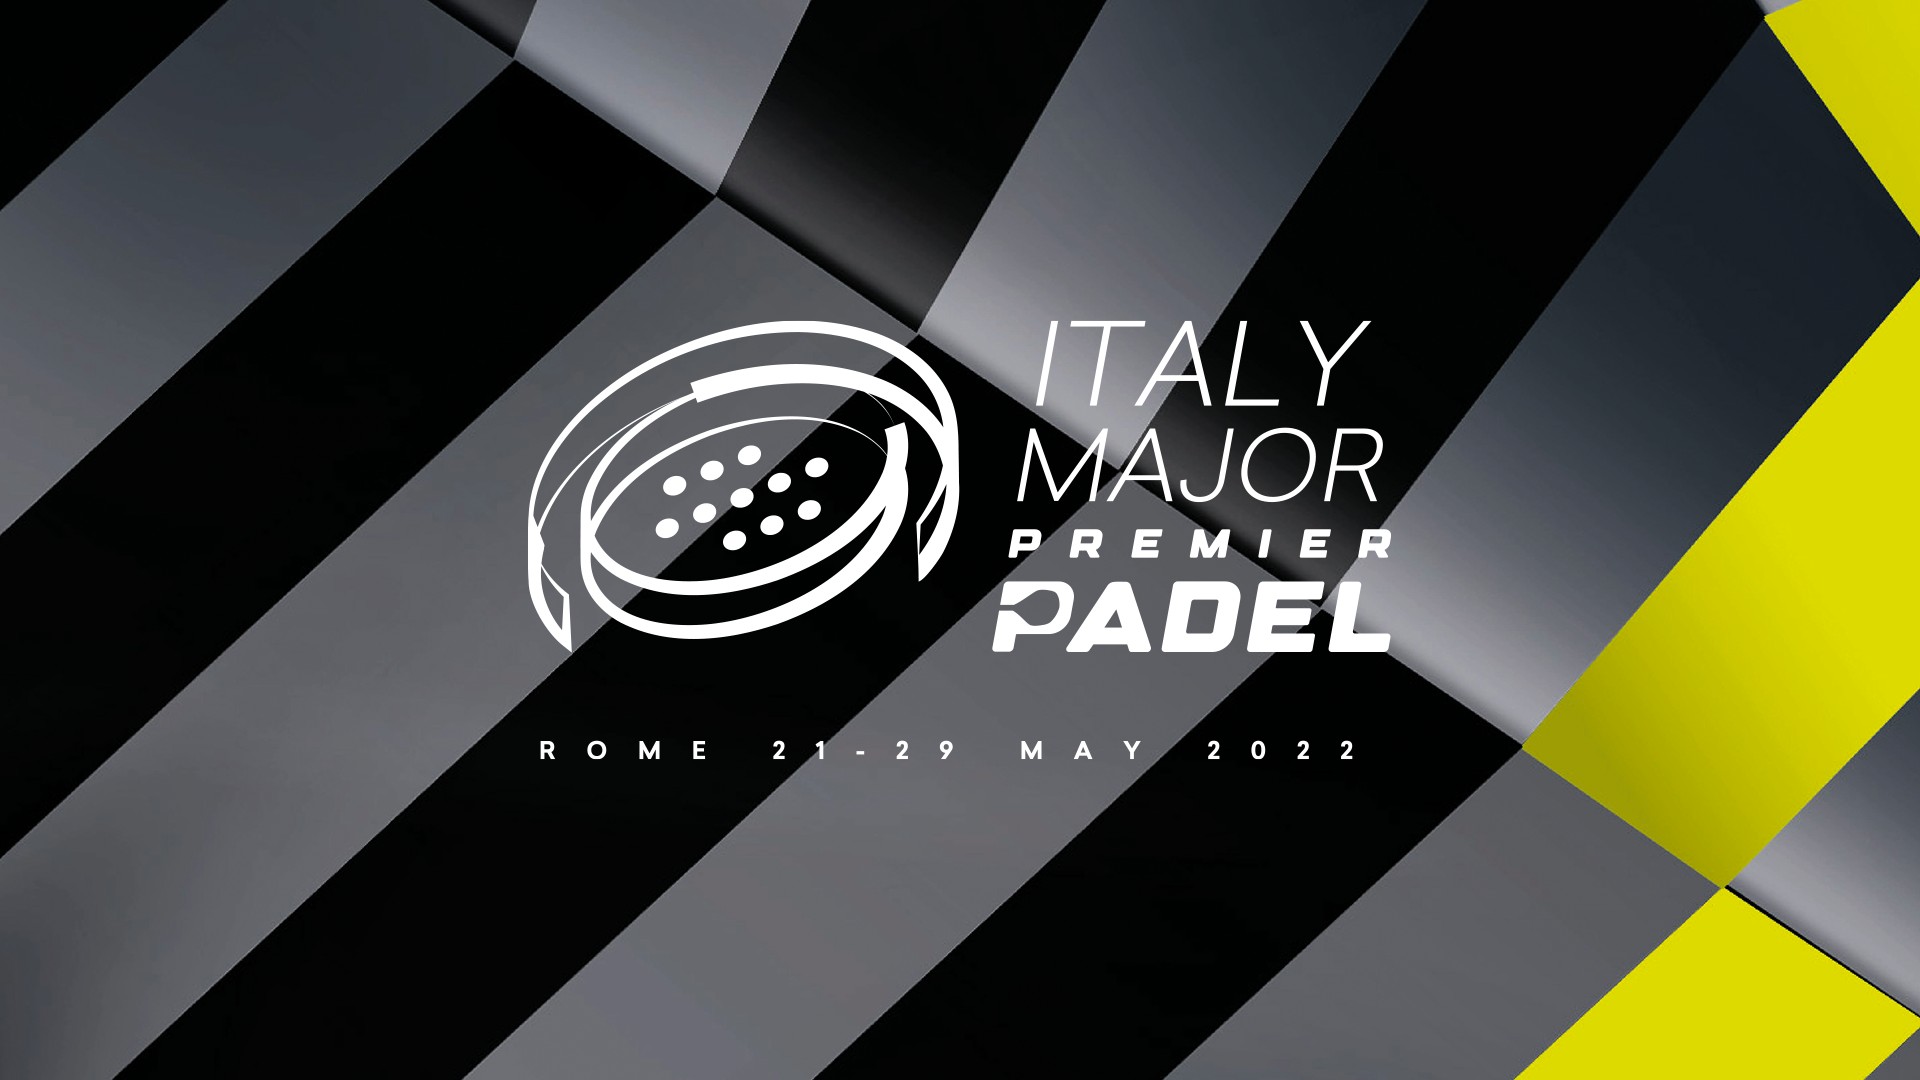 italiensk major premier padel logo